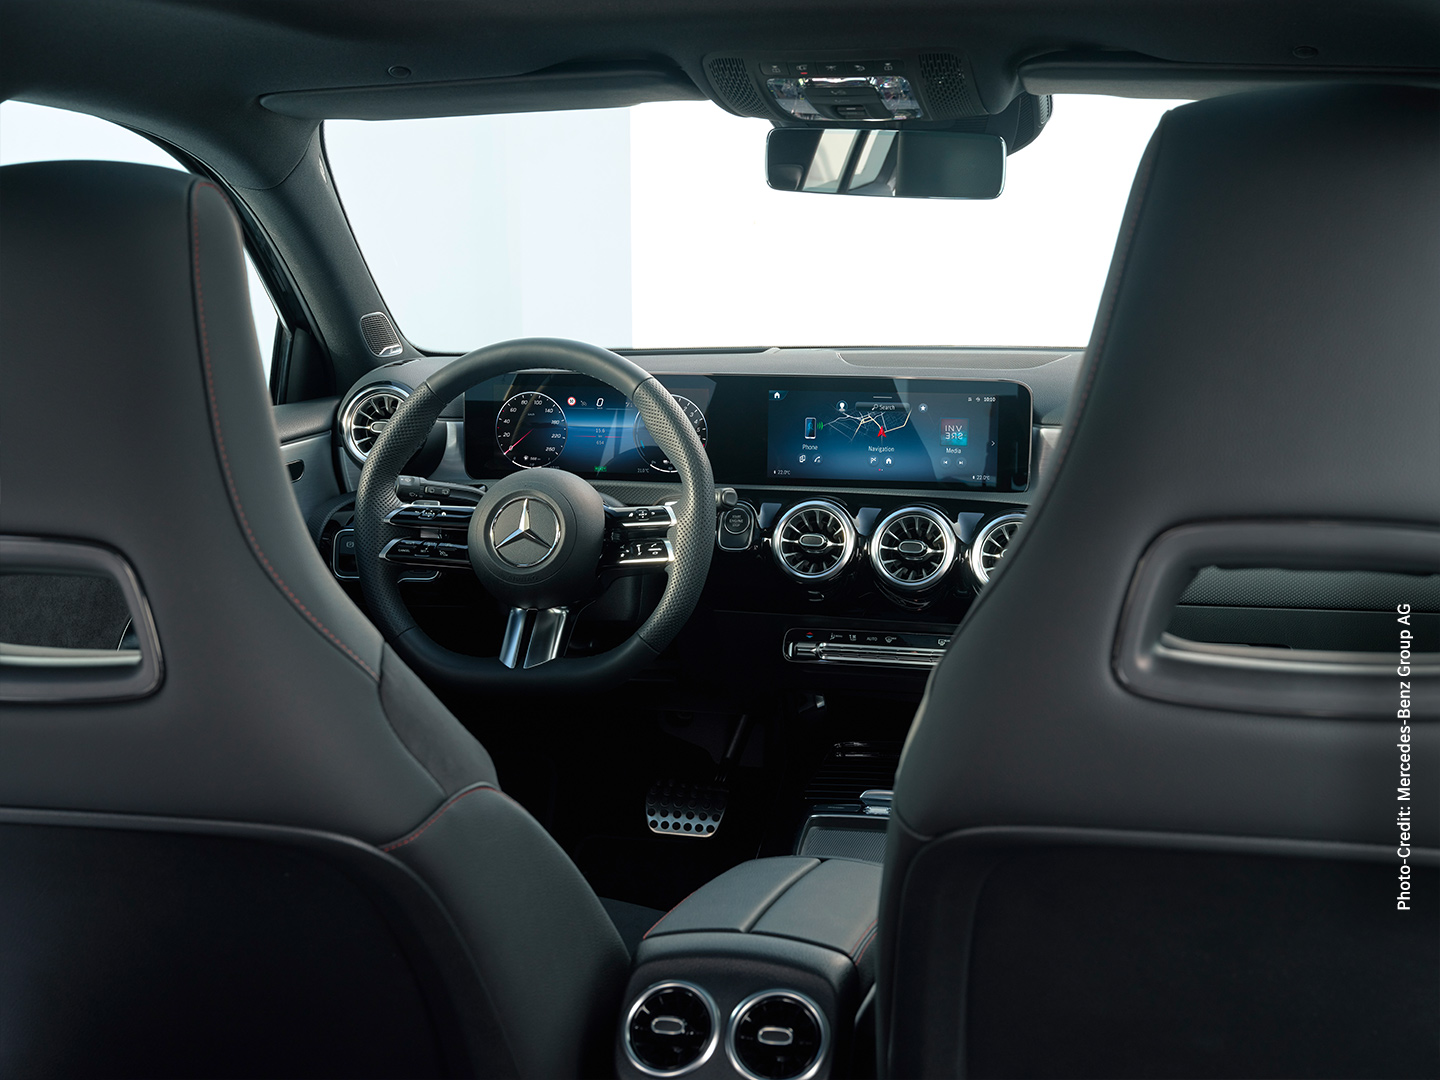 Mercedes-Benz Neuer A-Klasse Kompaktlimousine, Konfigurator und